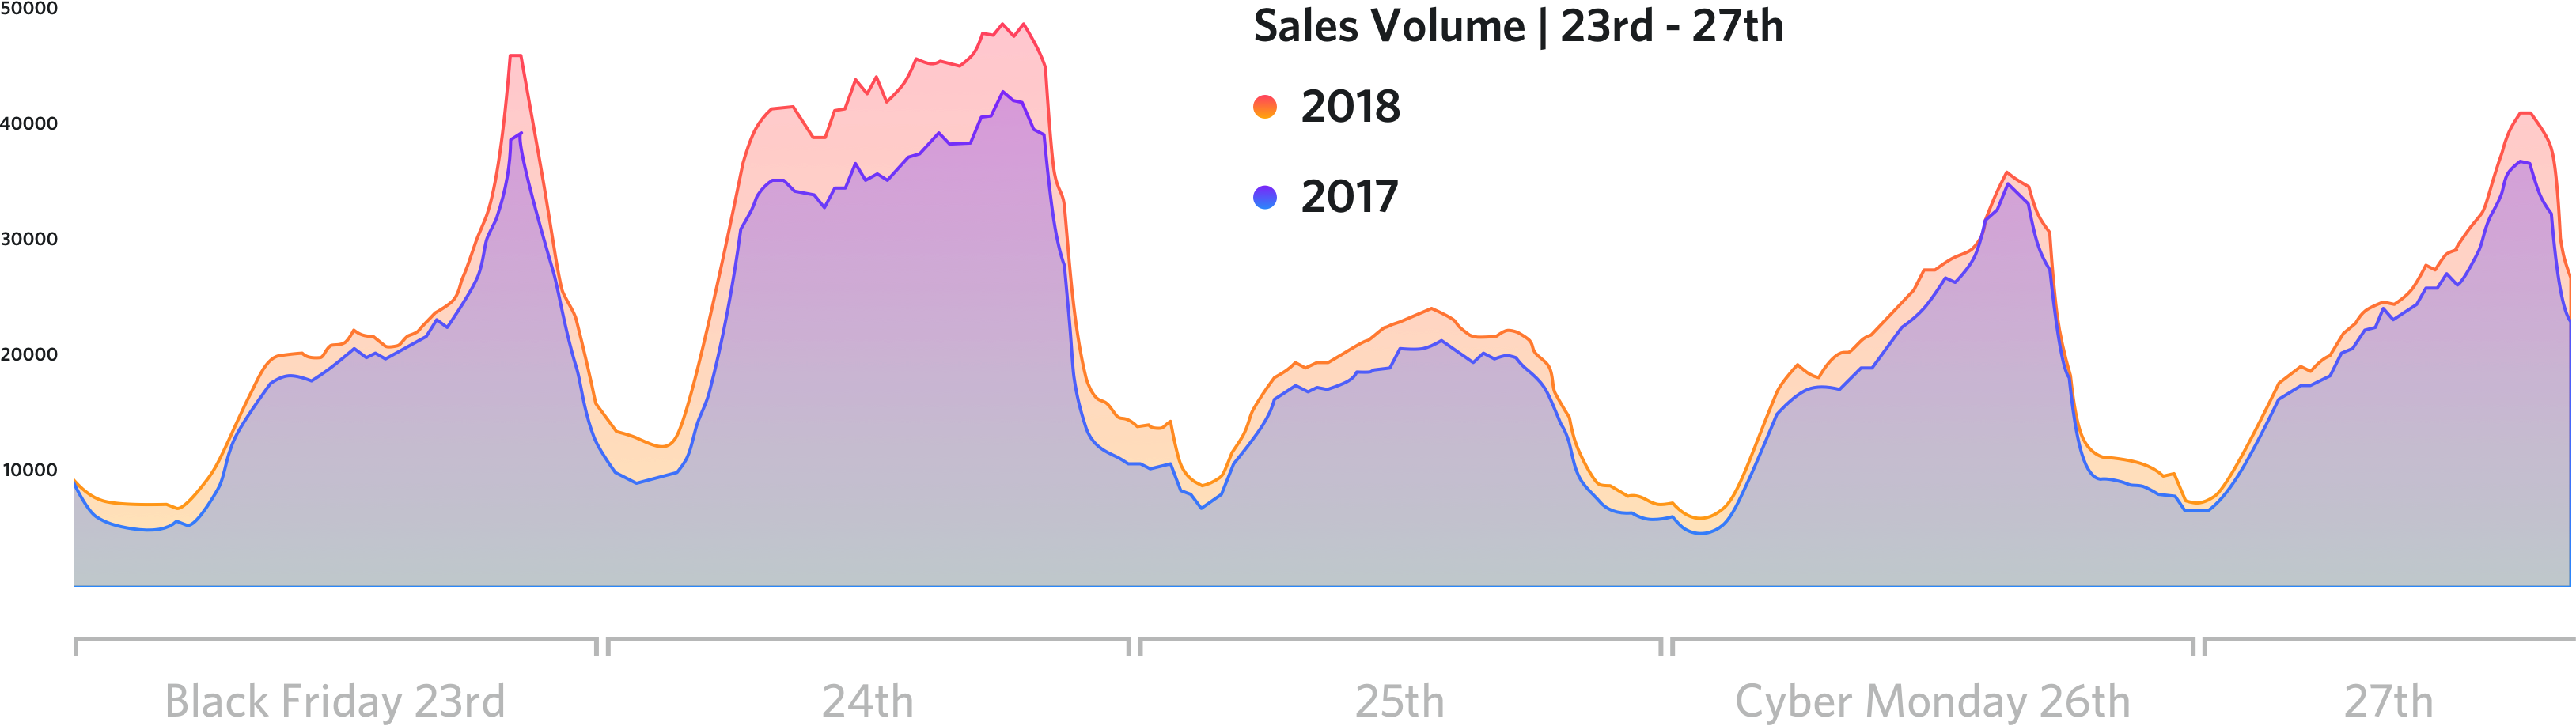 Volume di vendite durante il Black Friday e il Cyber Monday: 2018 vs 2017.